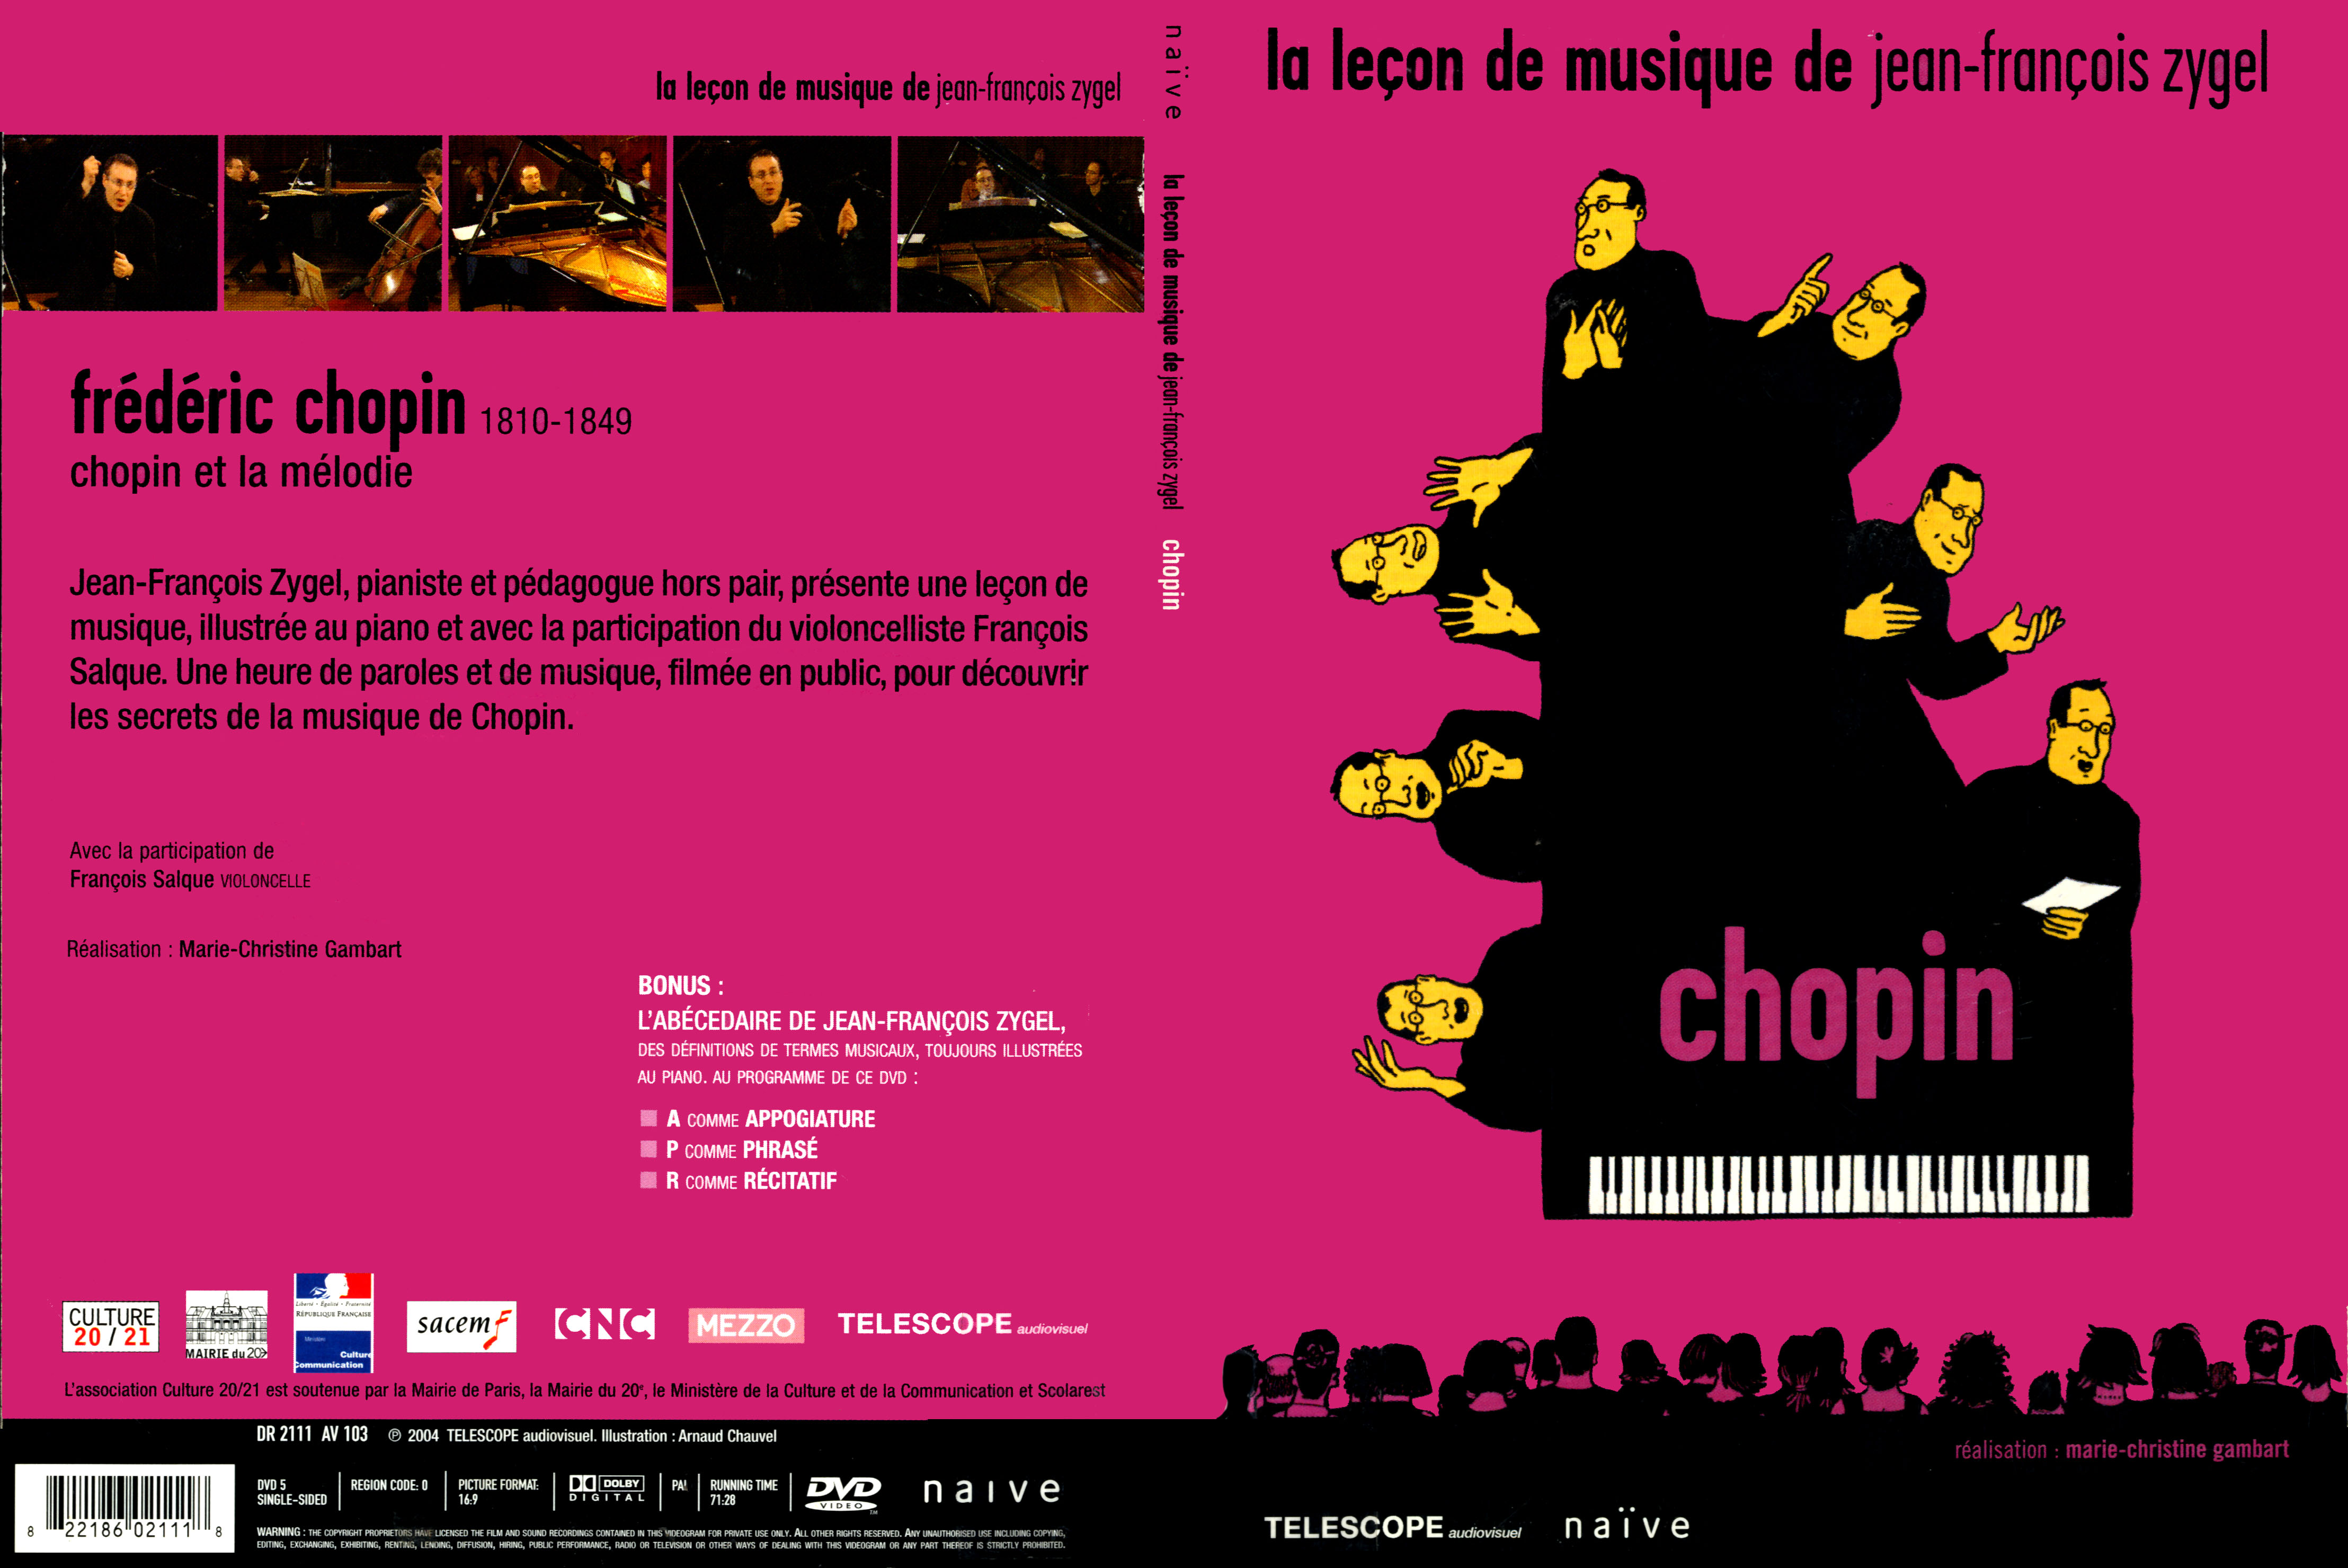 Jaquette DVD La lecon de musique de Jean-Francois Zygel - Chopin